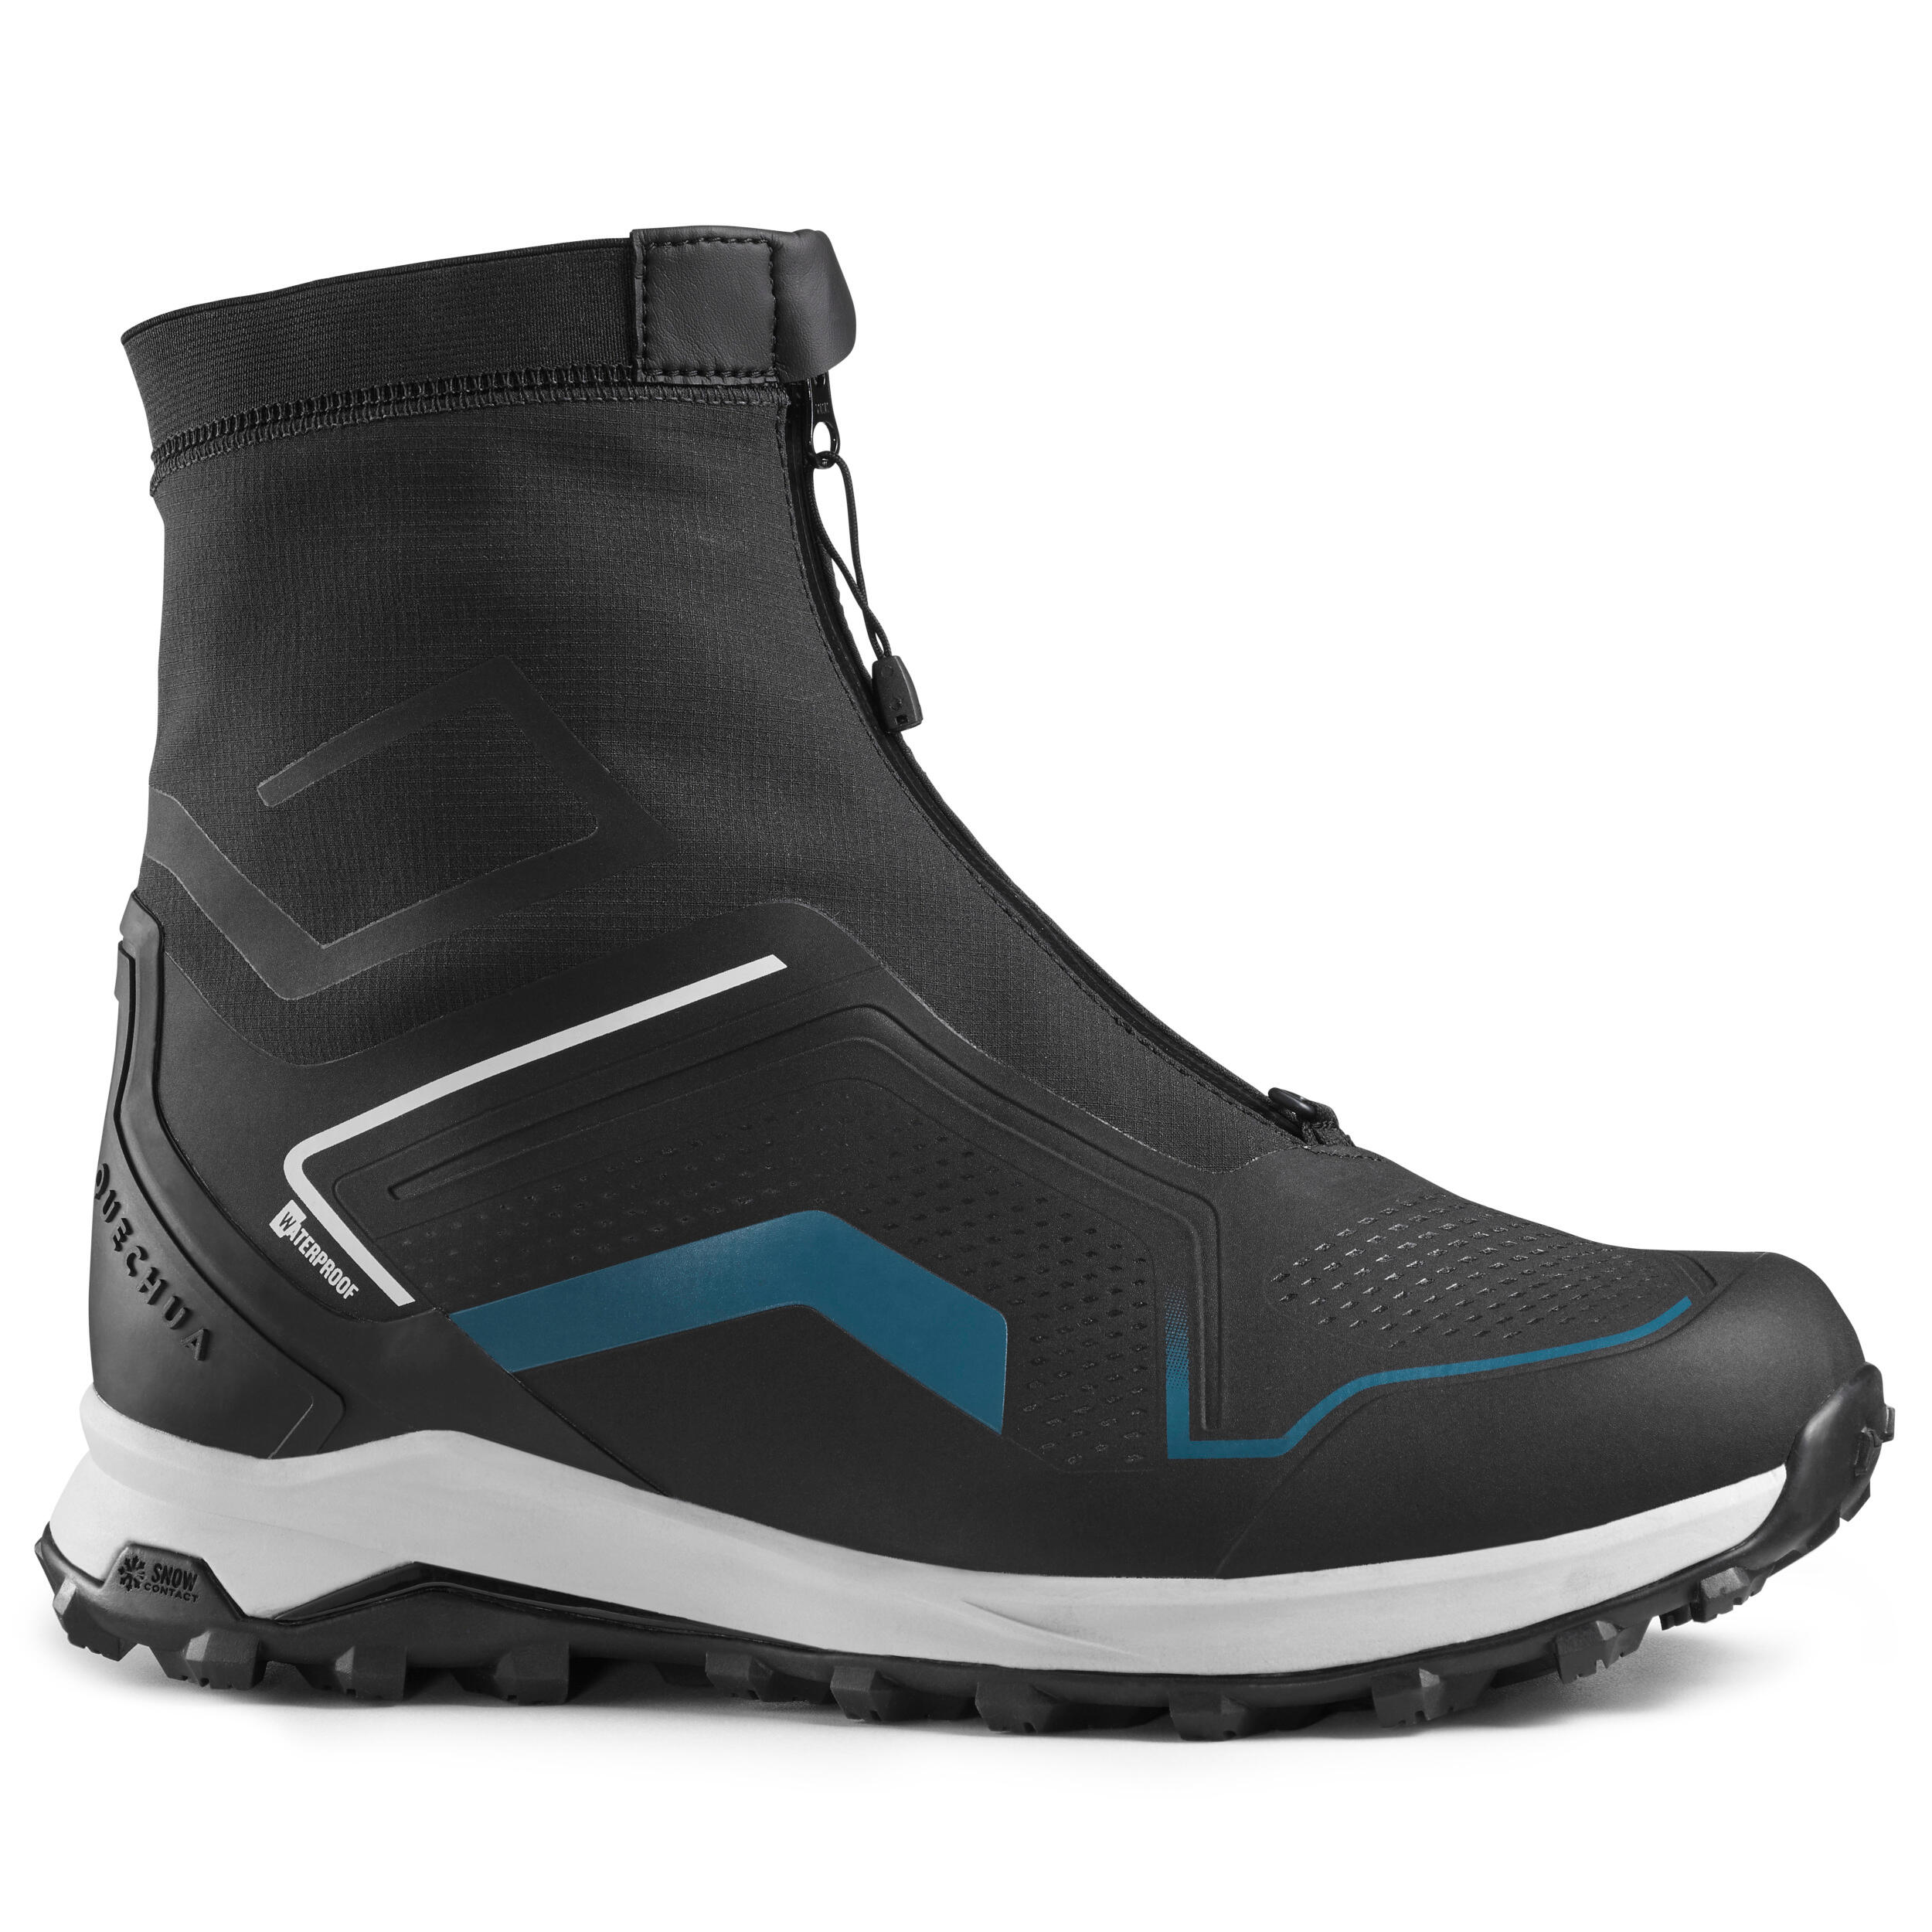 Schuhe Boots Snowboots Gr 38 Blaue Giesswein Wanderschuhe \/ Trekkingschuhe\/ Bergschuhe Fixpreis NEU 